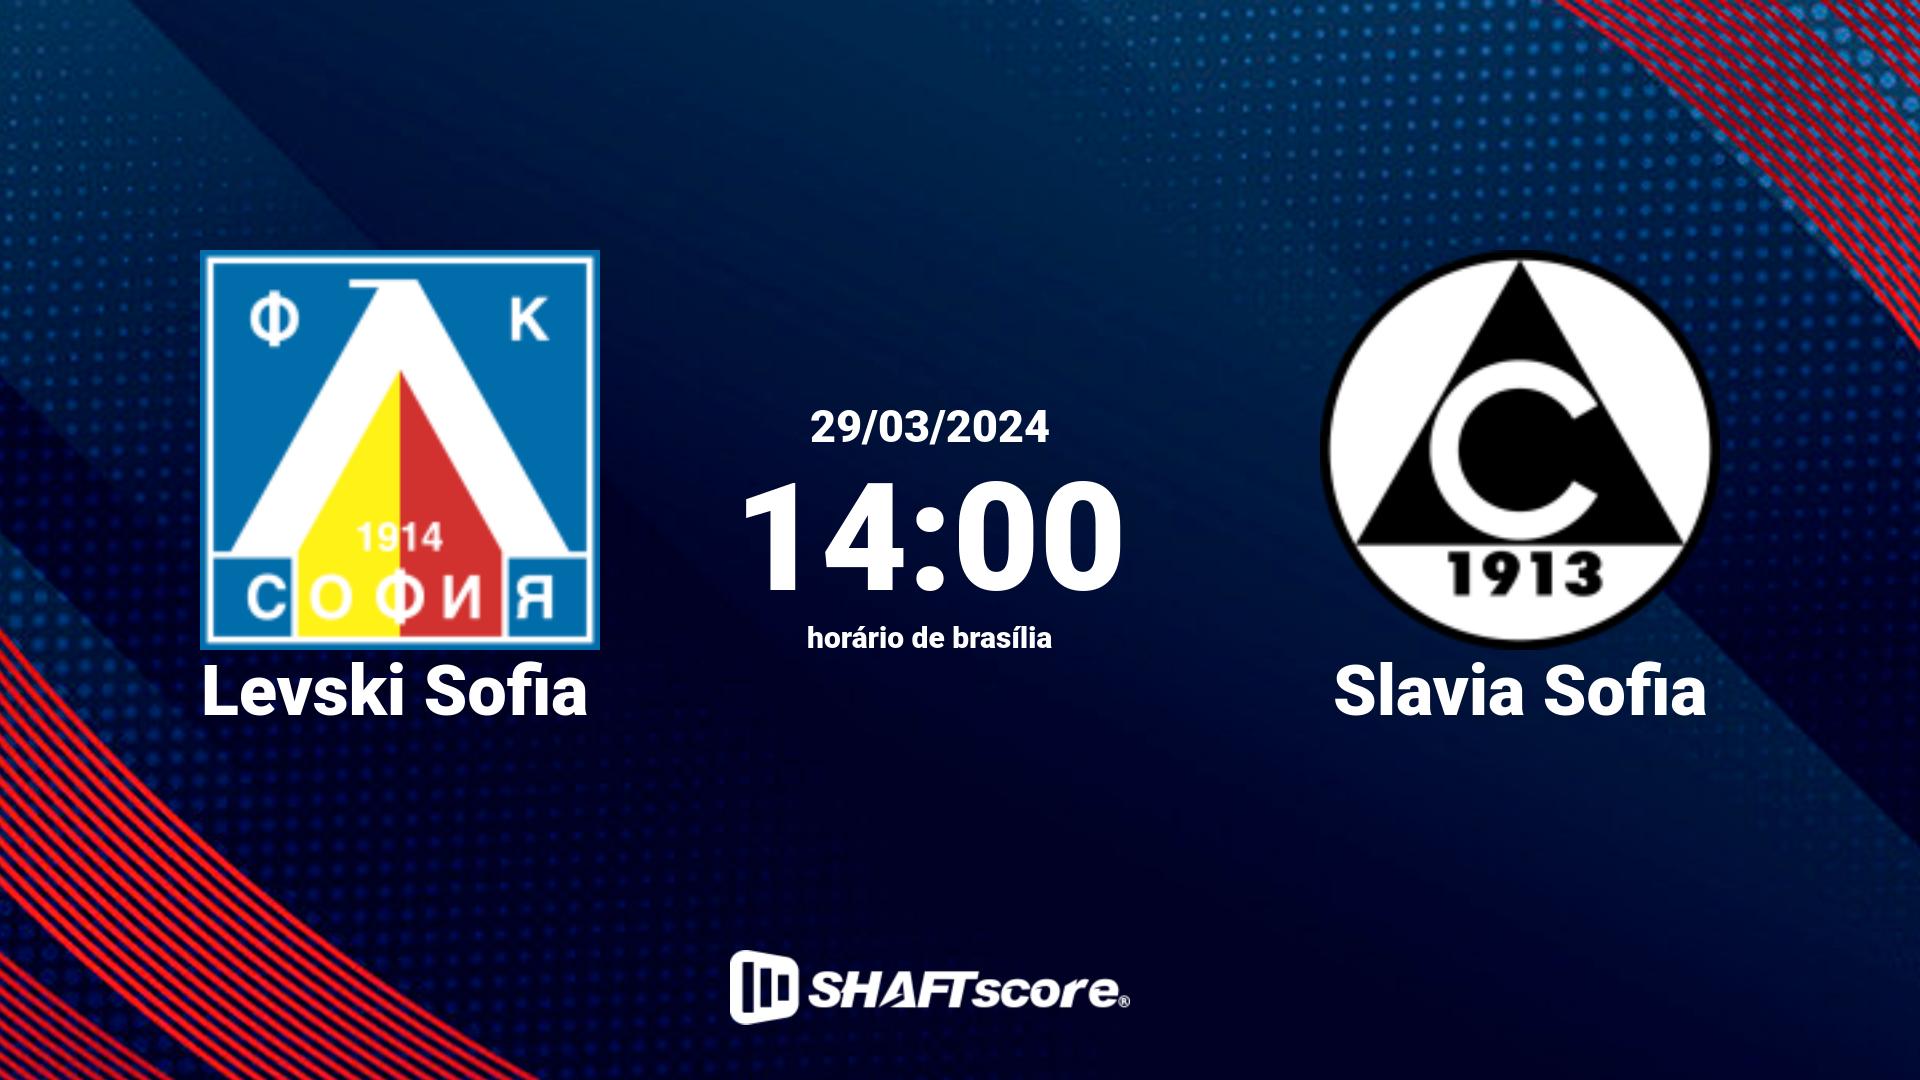 Estatísticas do jogo Levski Sofia vs Slavia Sofia 29.03 14:00